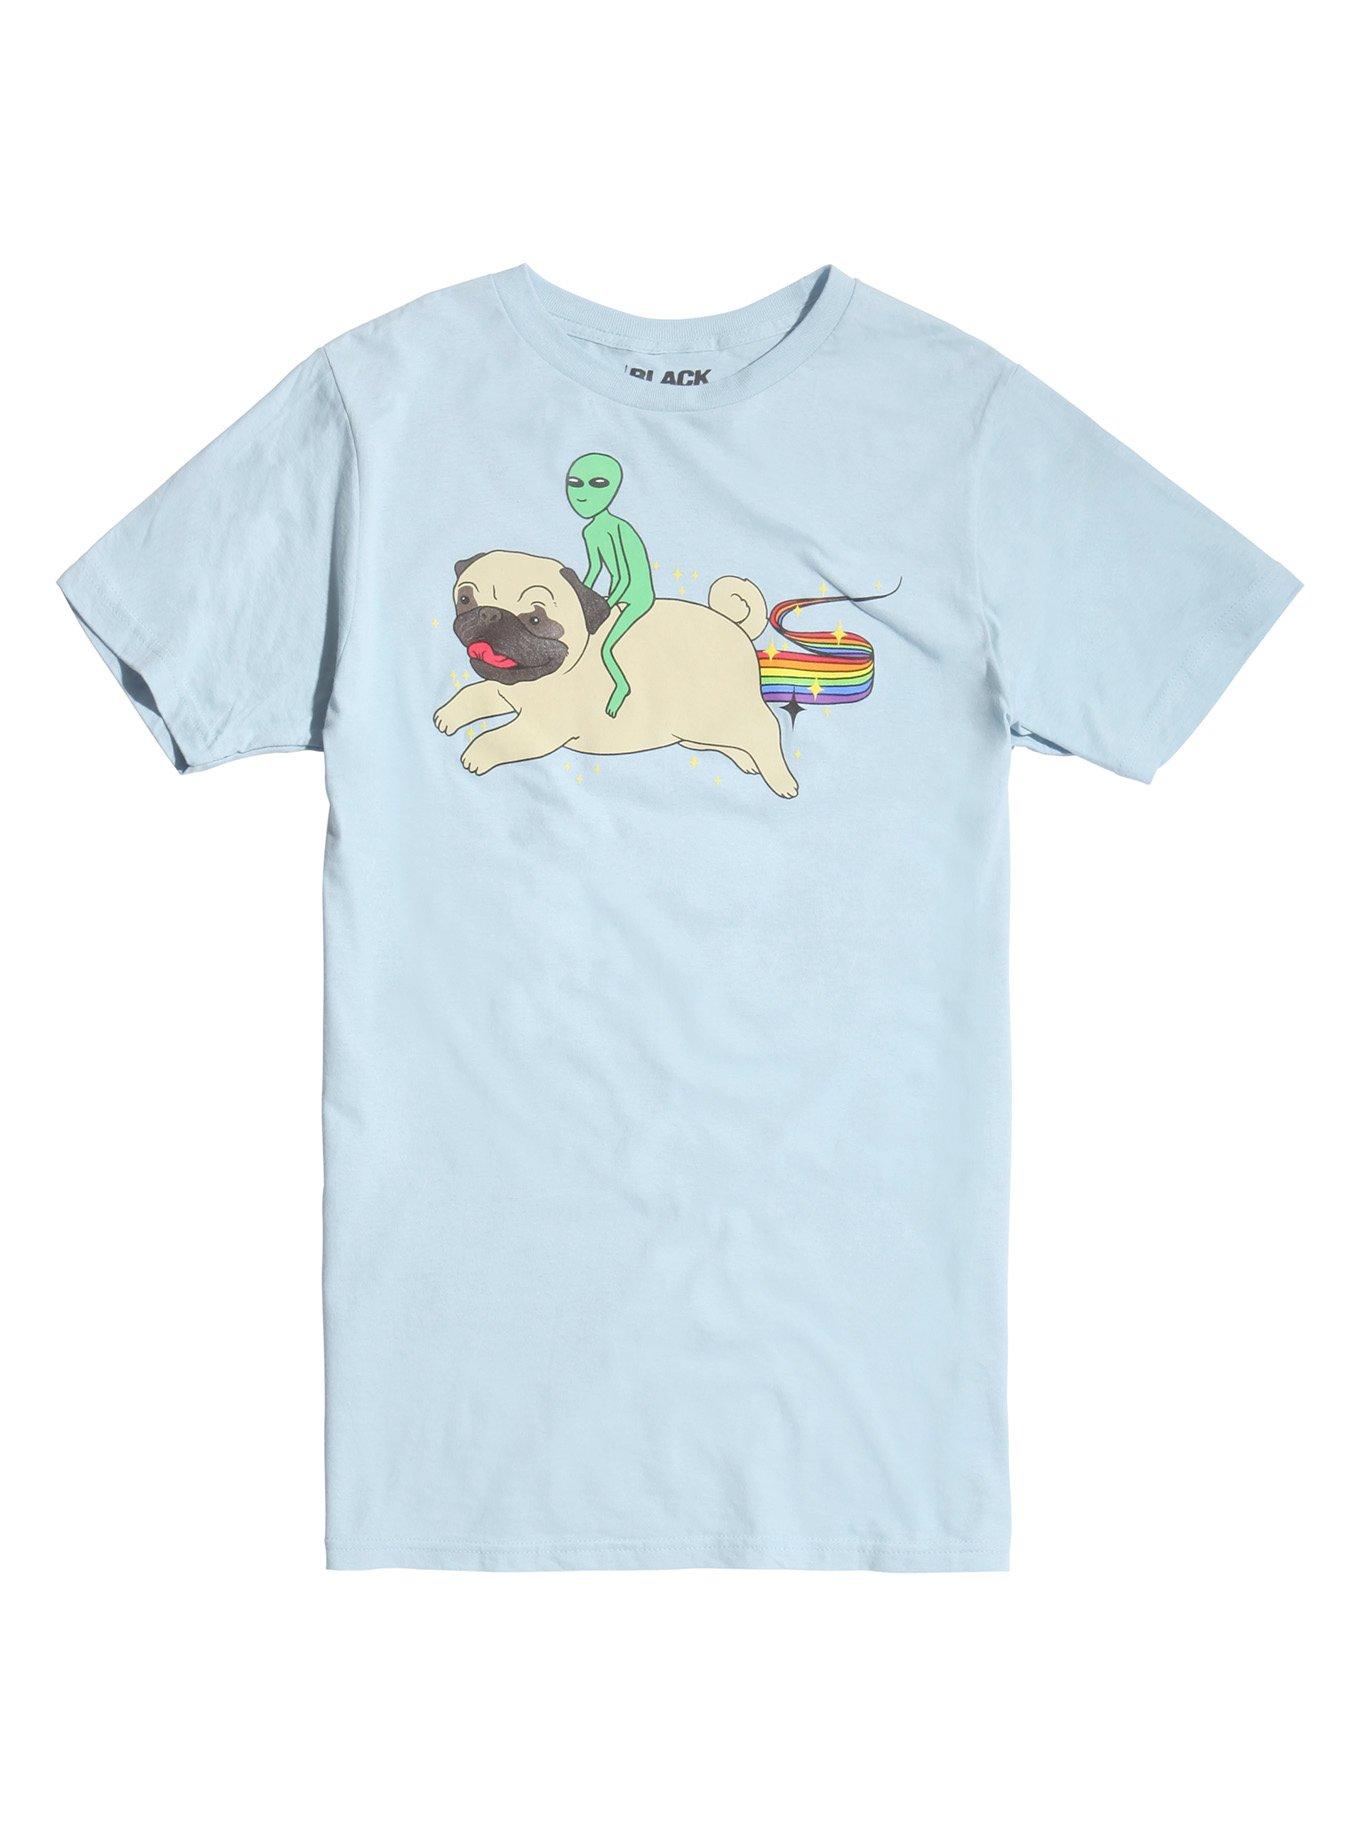 Alien Riding Pug T-Shirt, BLUE, hi-res